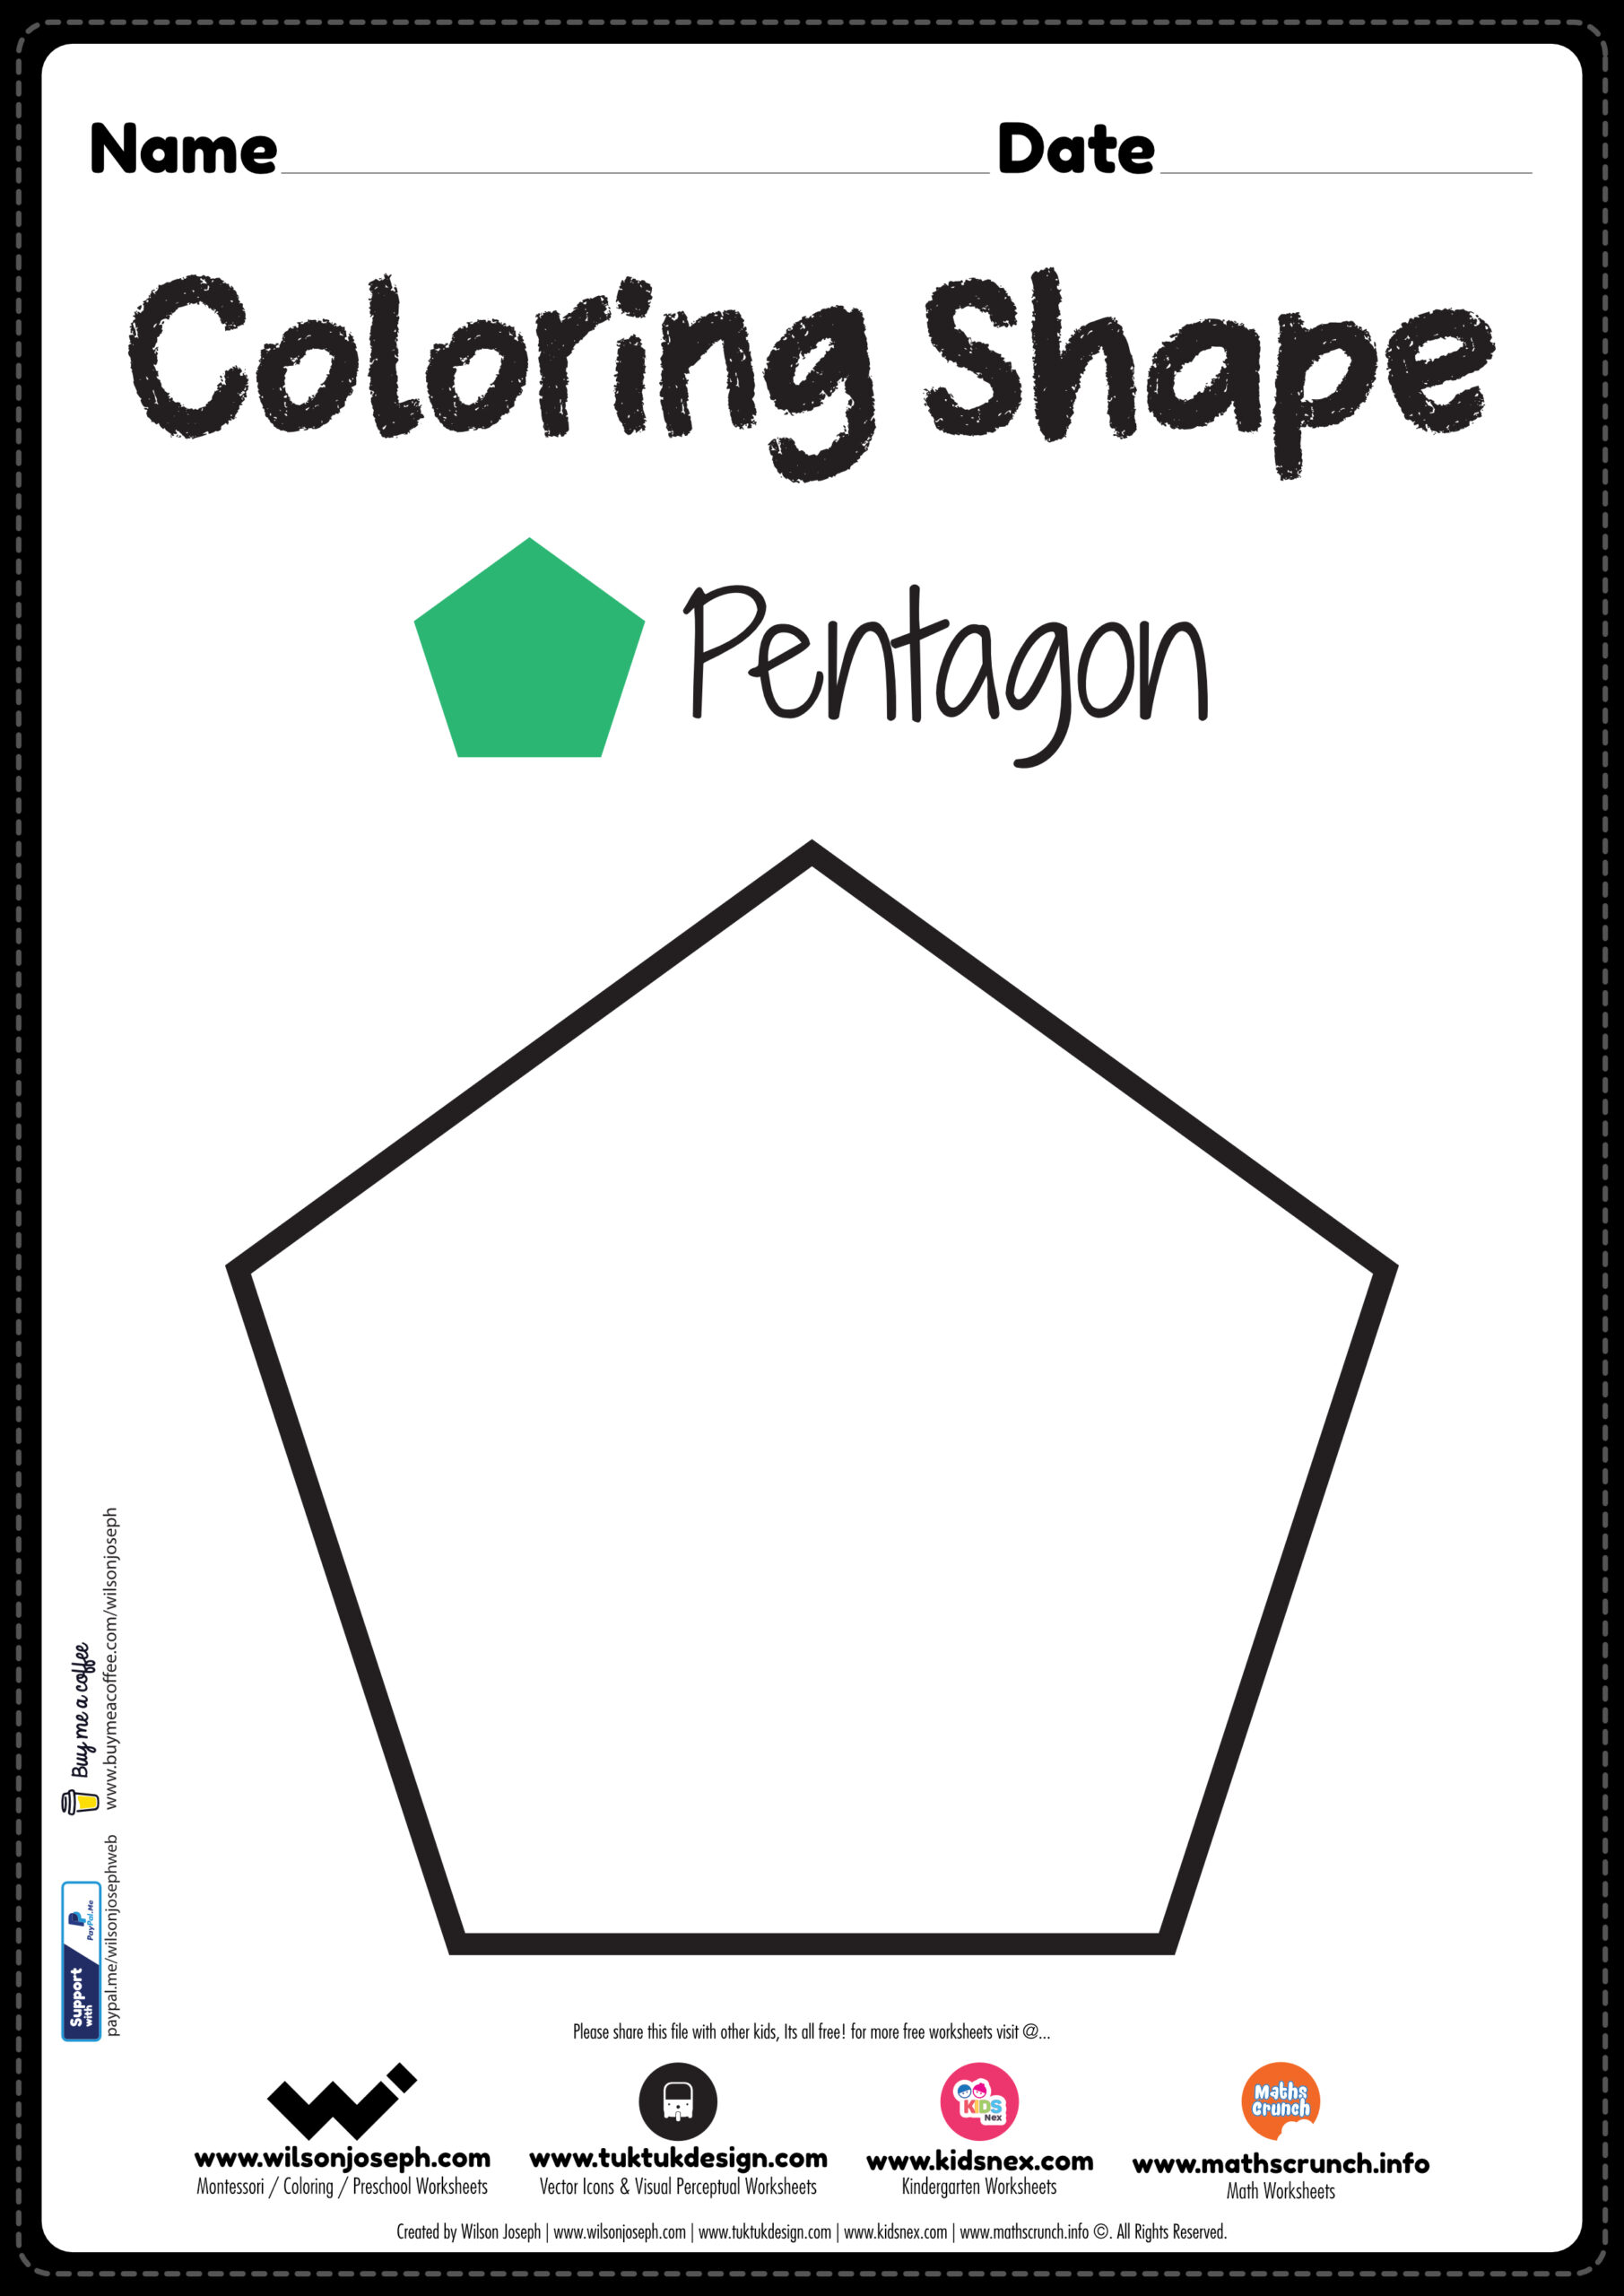 pentagon-shapes-worksheets